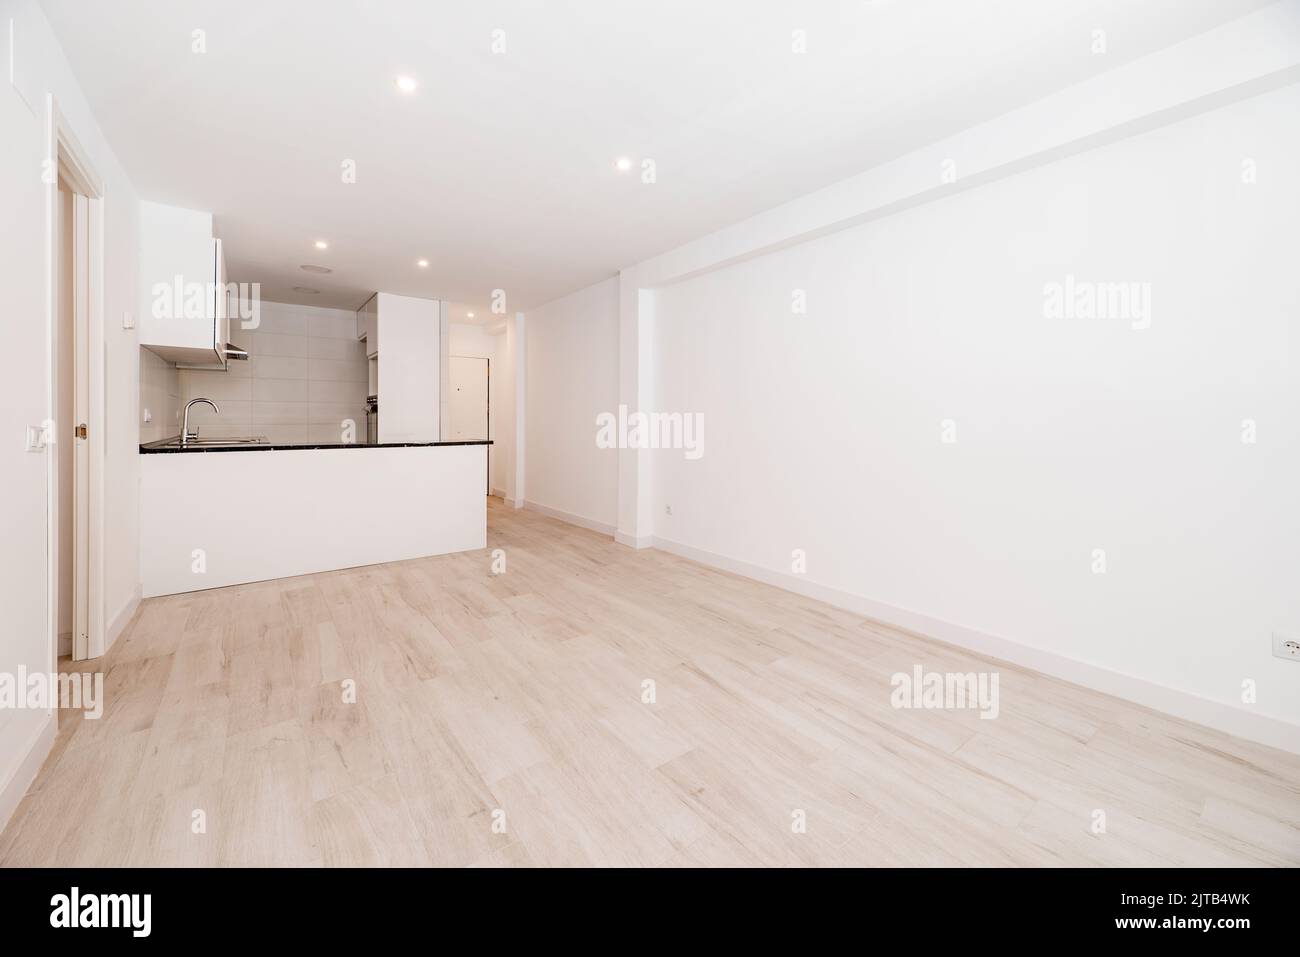 la stanza vuota ha pavimento di legno chiaro, parete dipinta di bianco semplice, isola con il countertop di pietra nera e cucina aperta Foto Stock